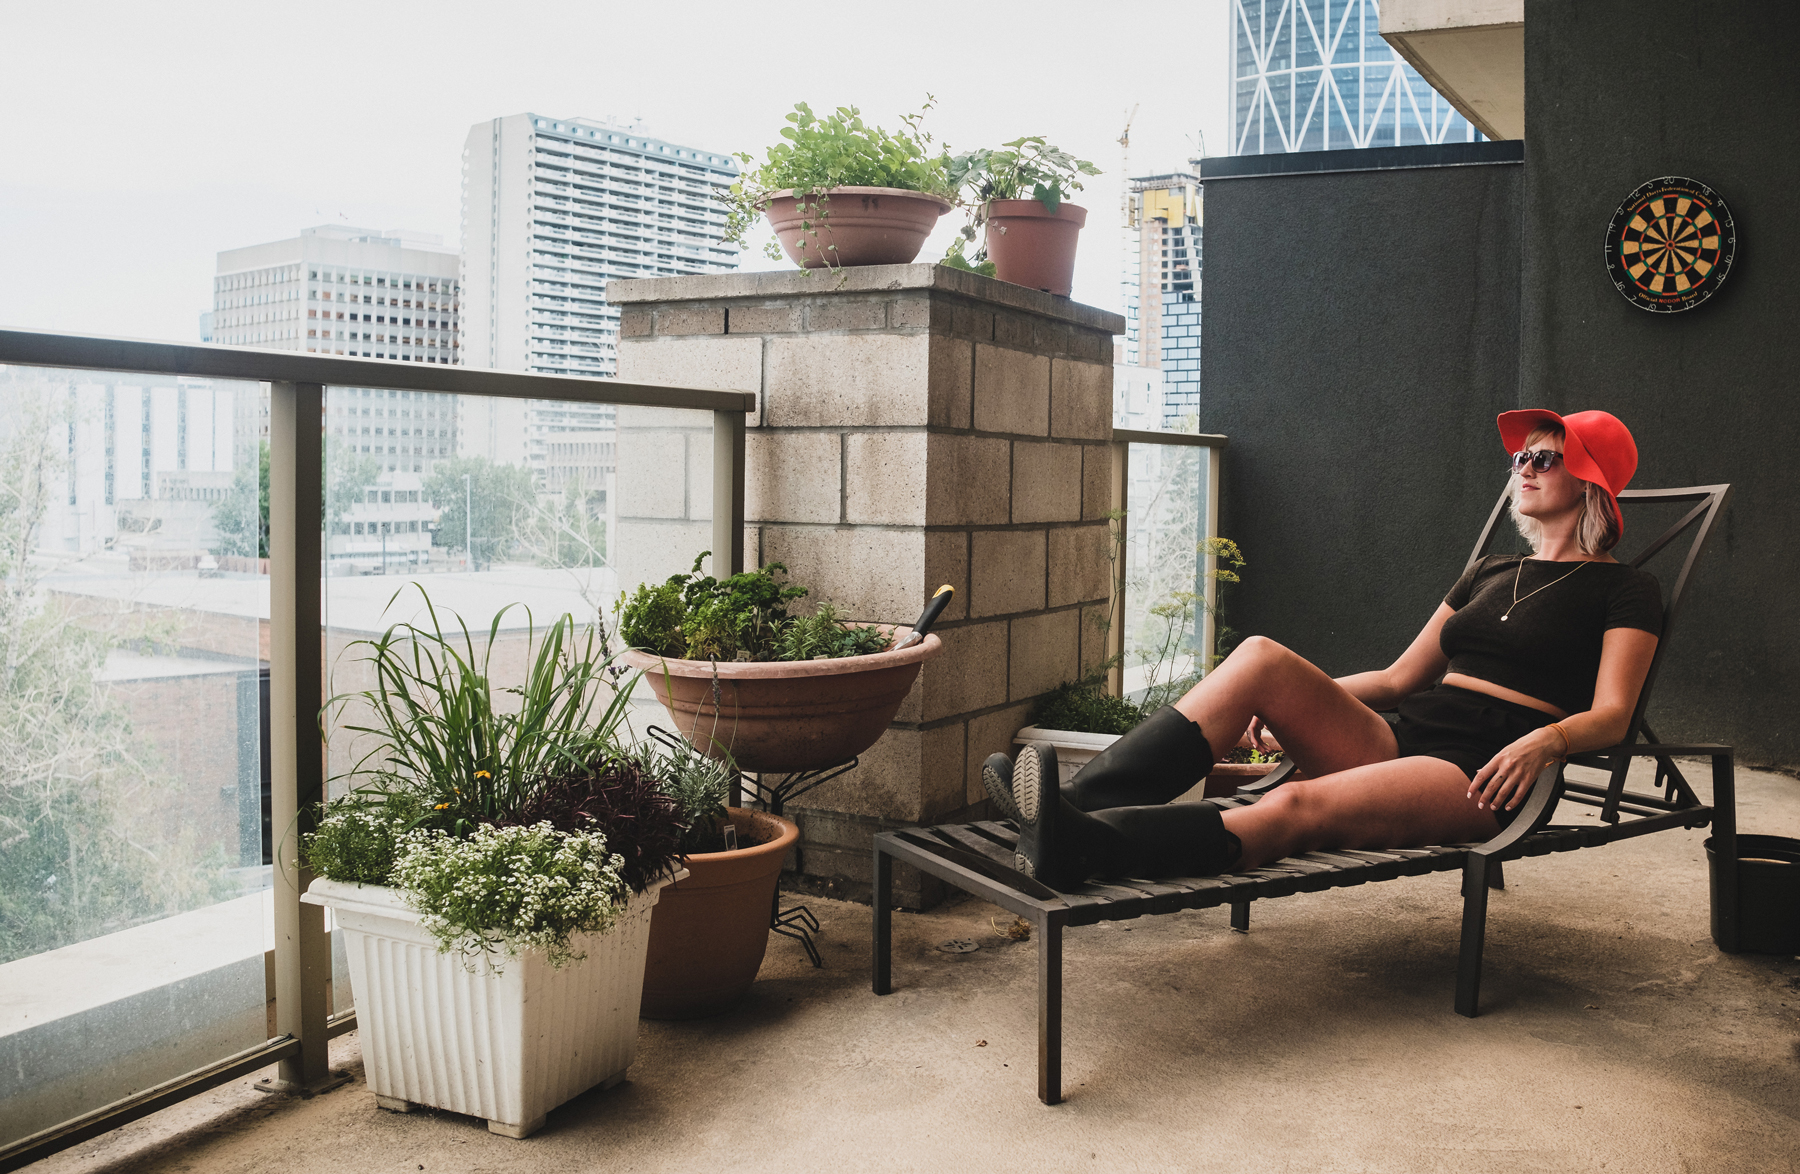 Justine Vandergrift's Herbaceous Balcony Garden